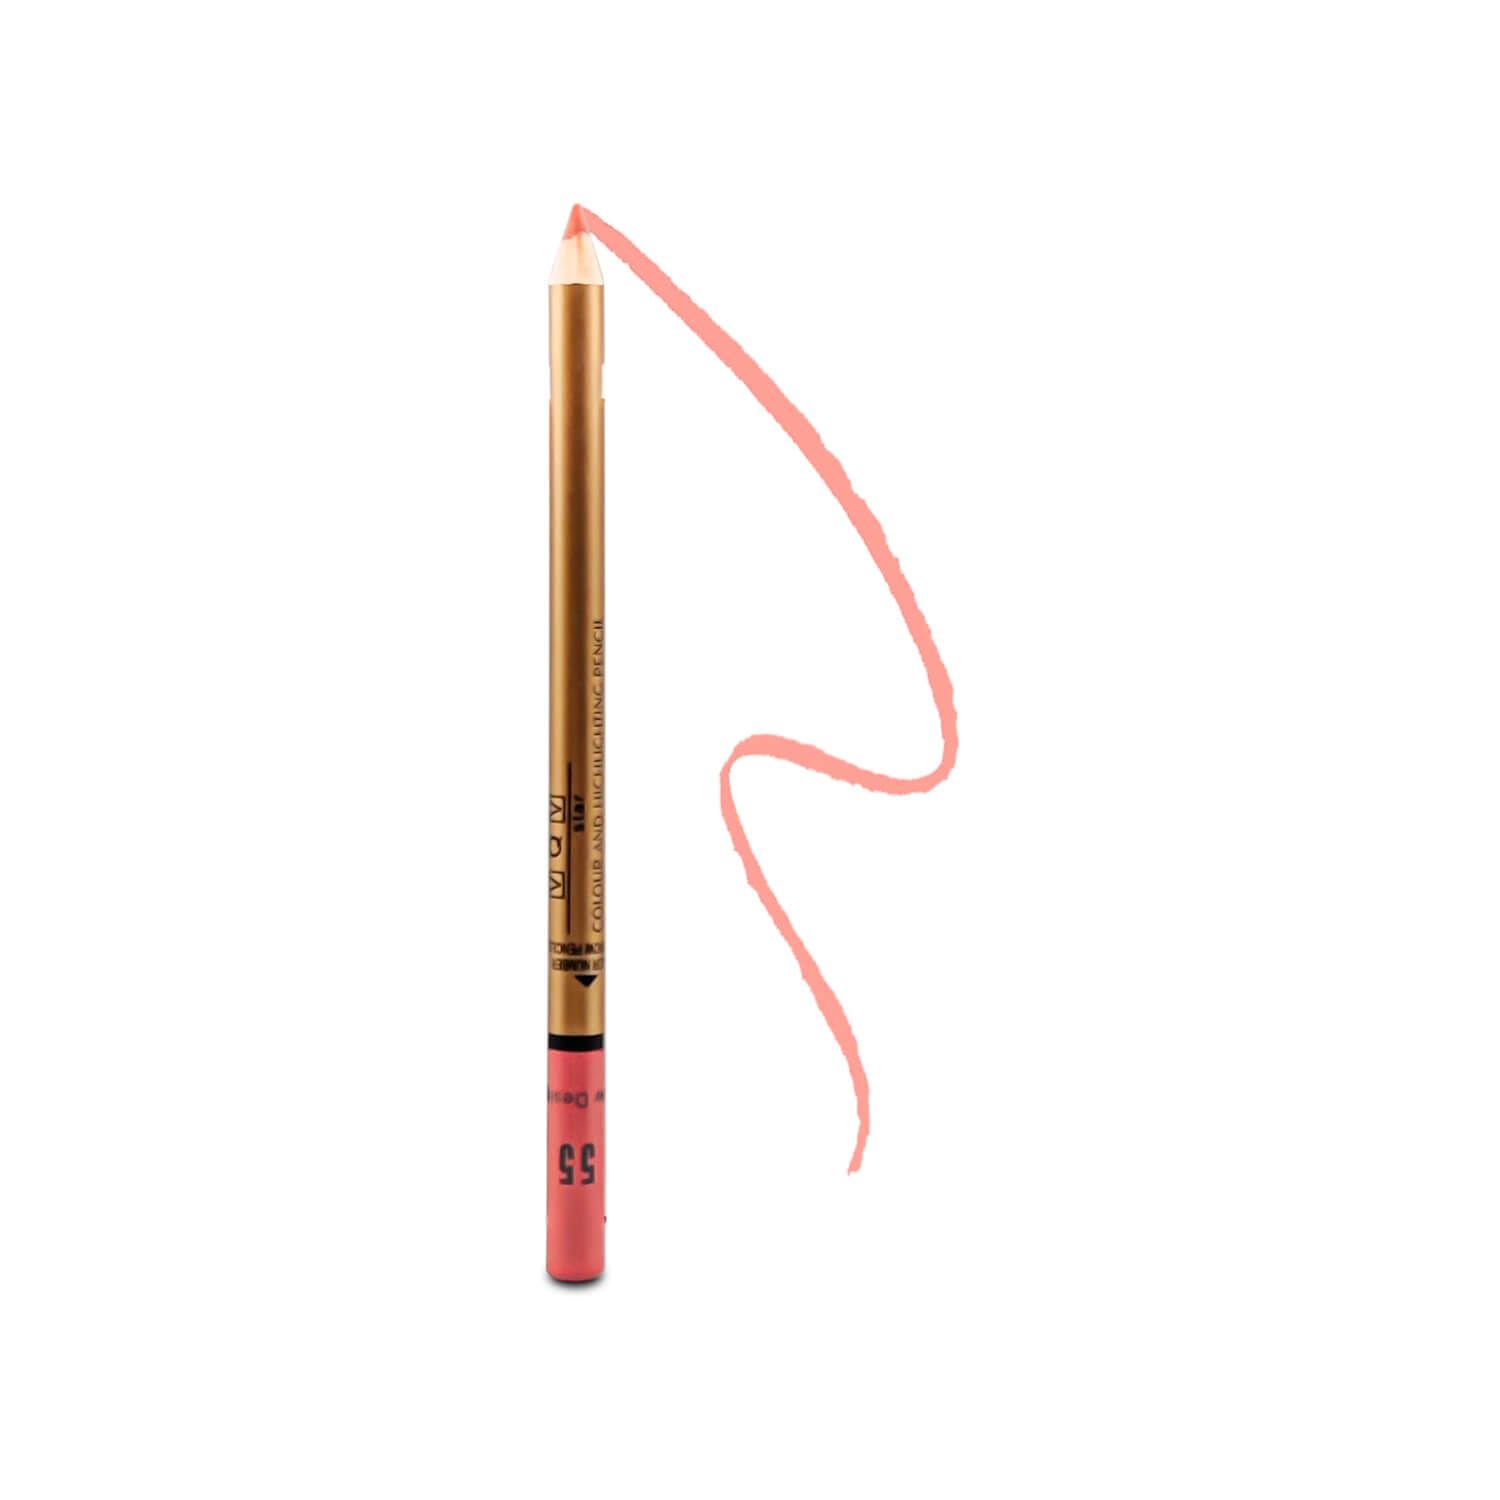 مداد لب وی کیو وی مدل New Design شماره 55